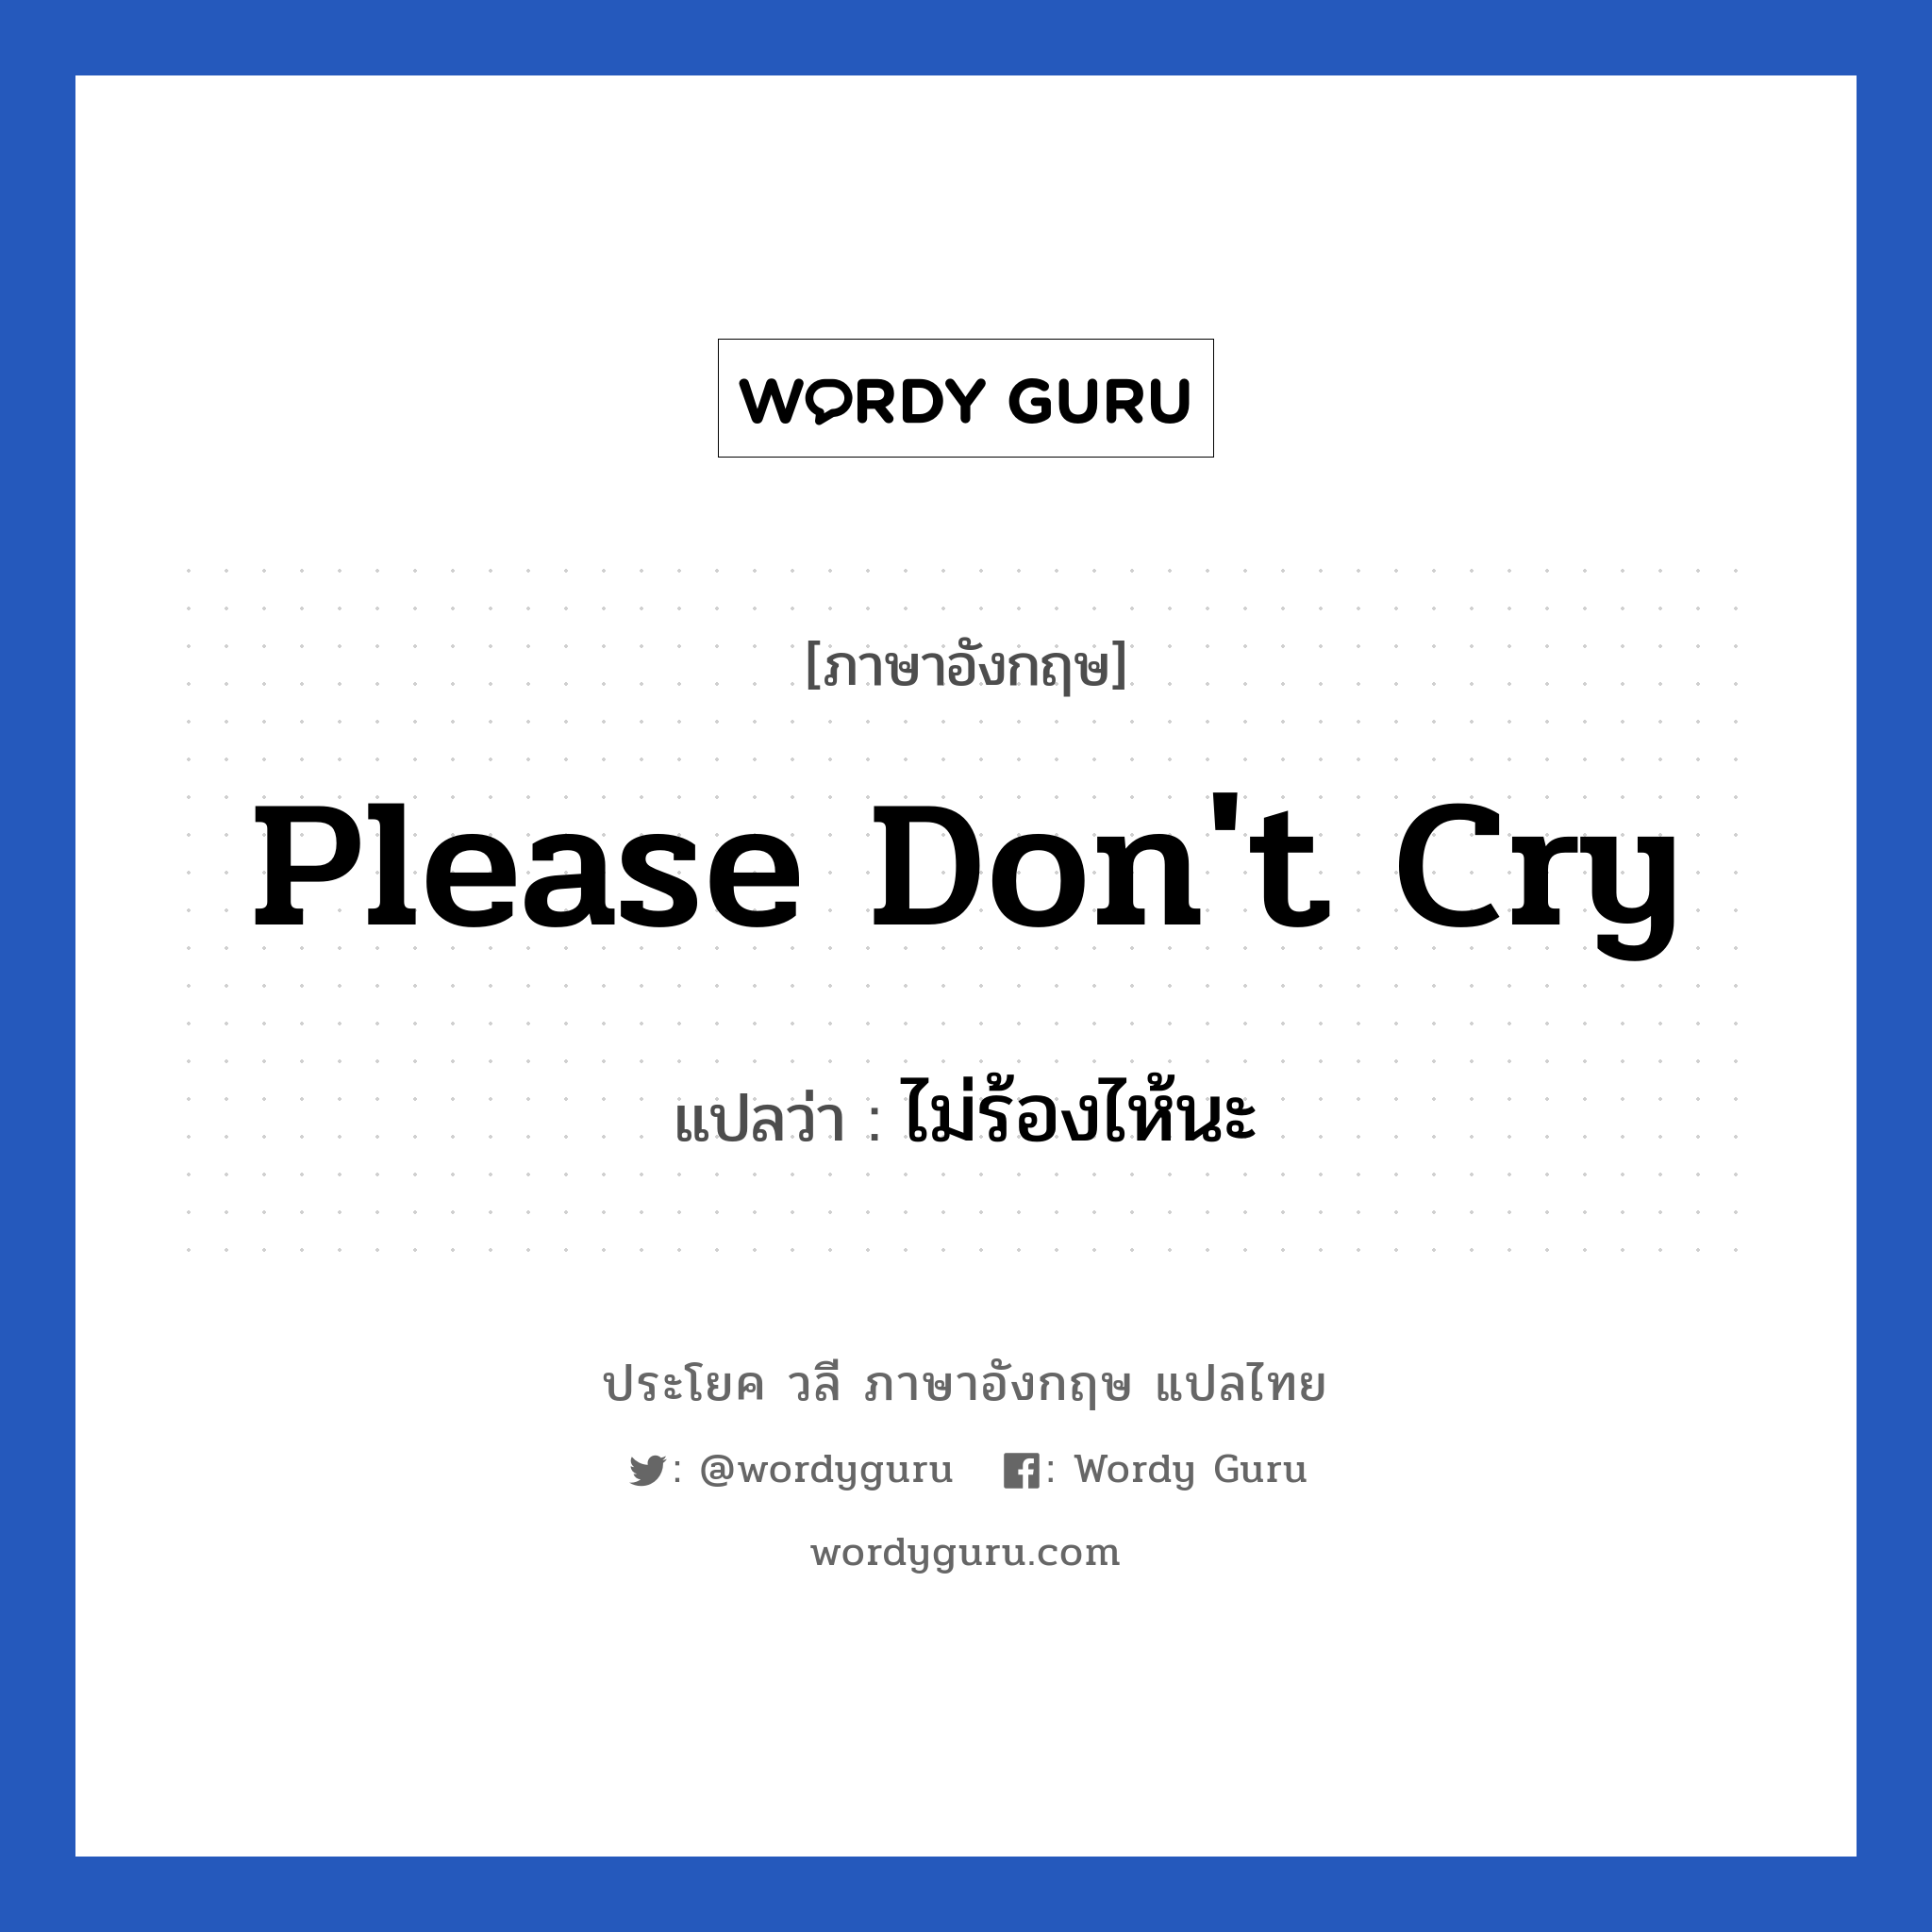 Please don't cry แปลว่า?, วลีภาษาอังกฤษ Please don't cry แปลว่า ไม่ร้องไห้นะ